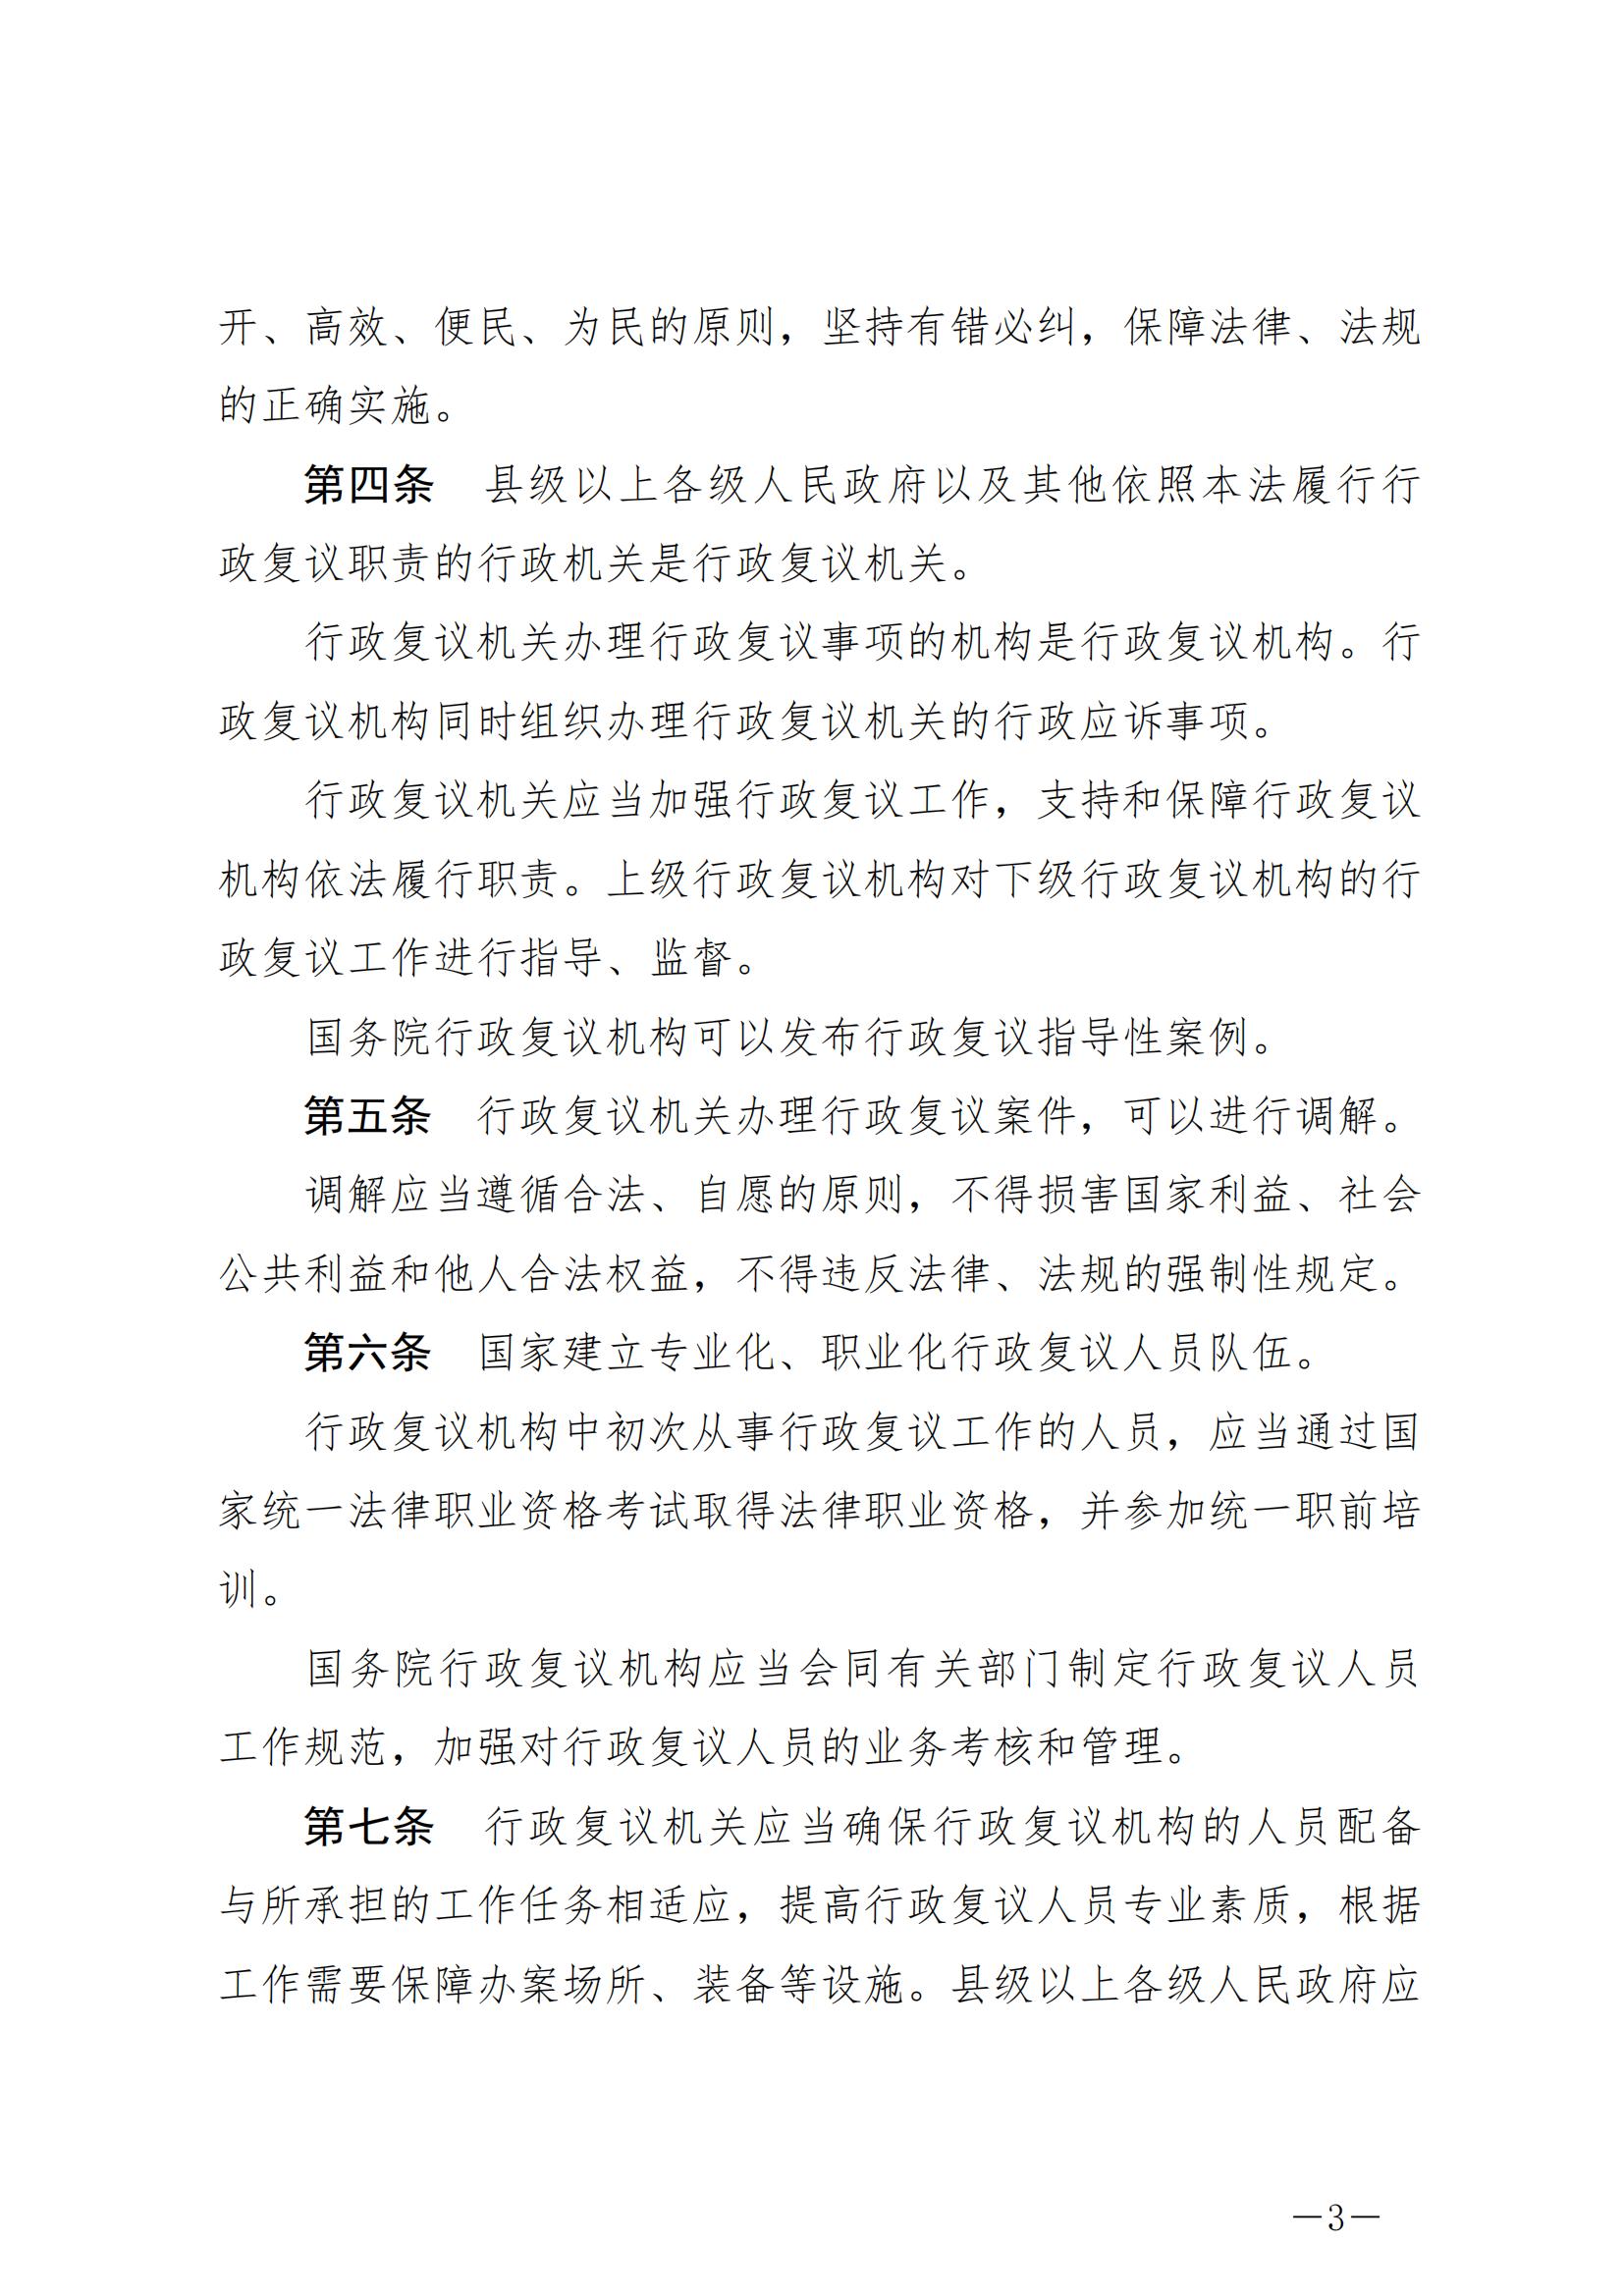 《中华人民共和国行政复议法》_20231204154310_02.jpg